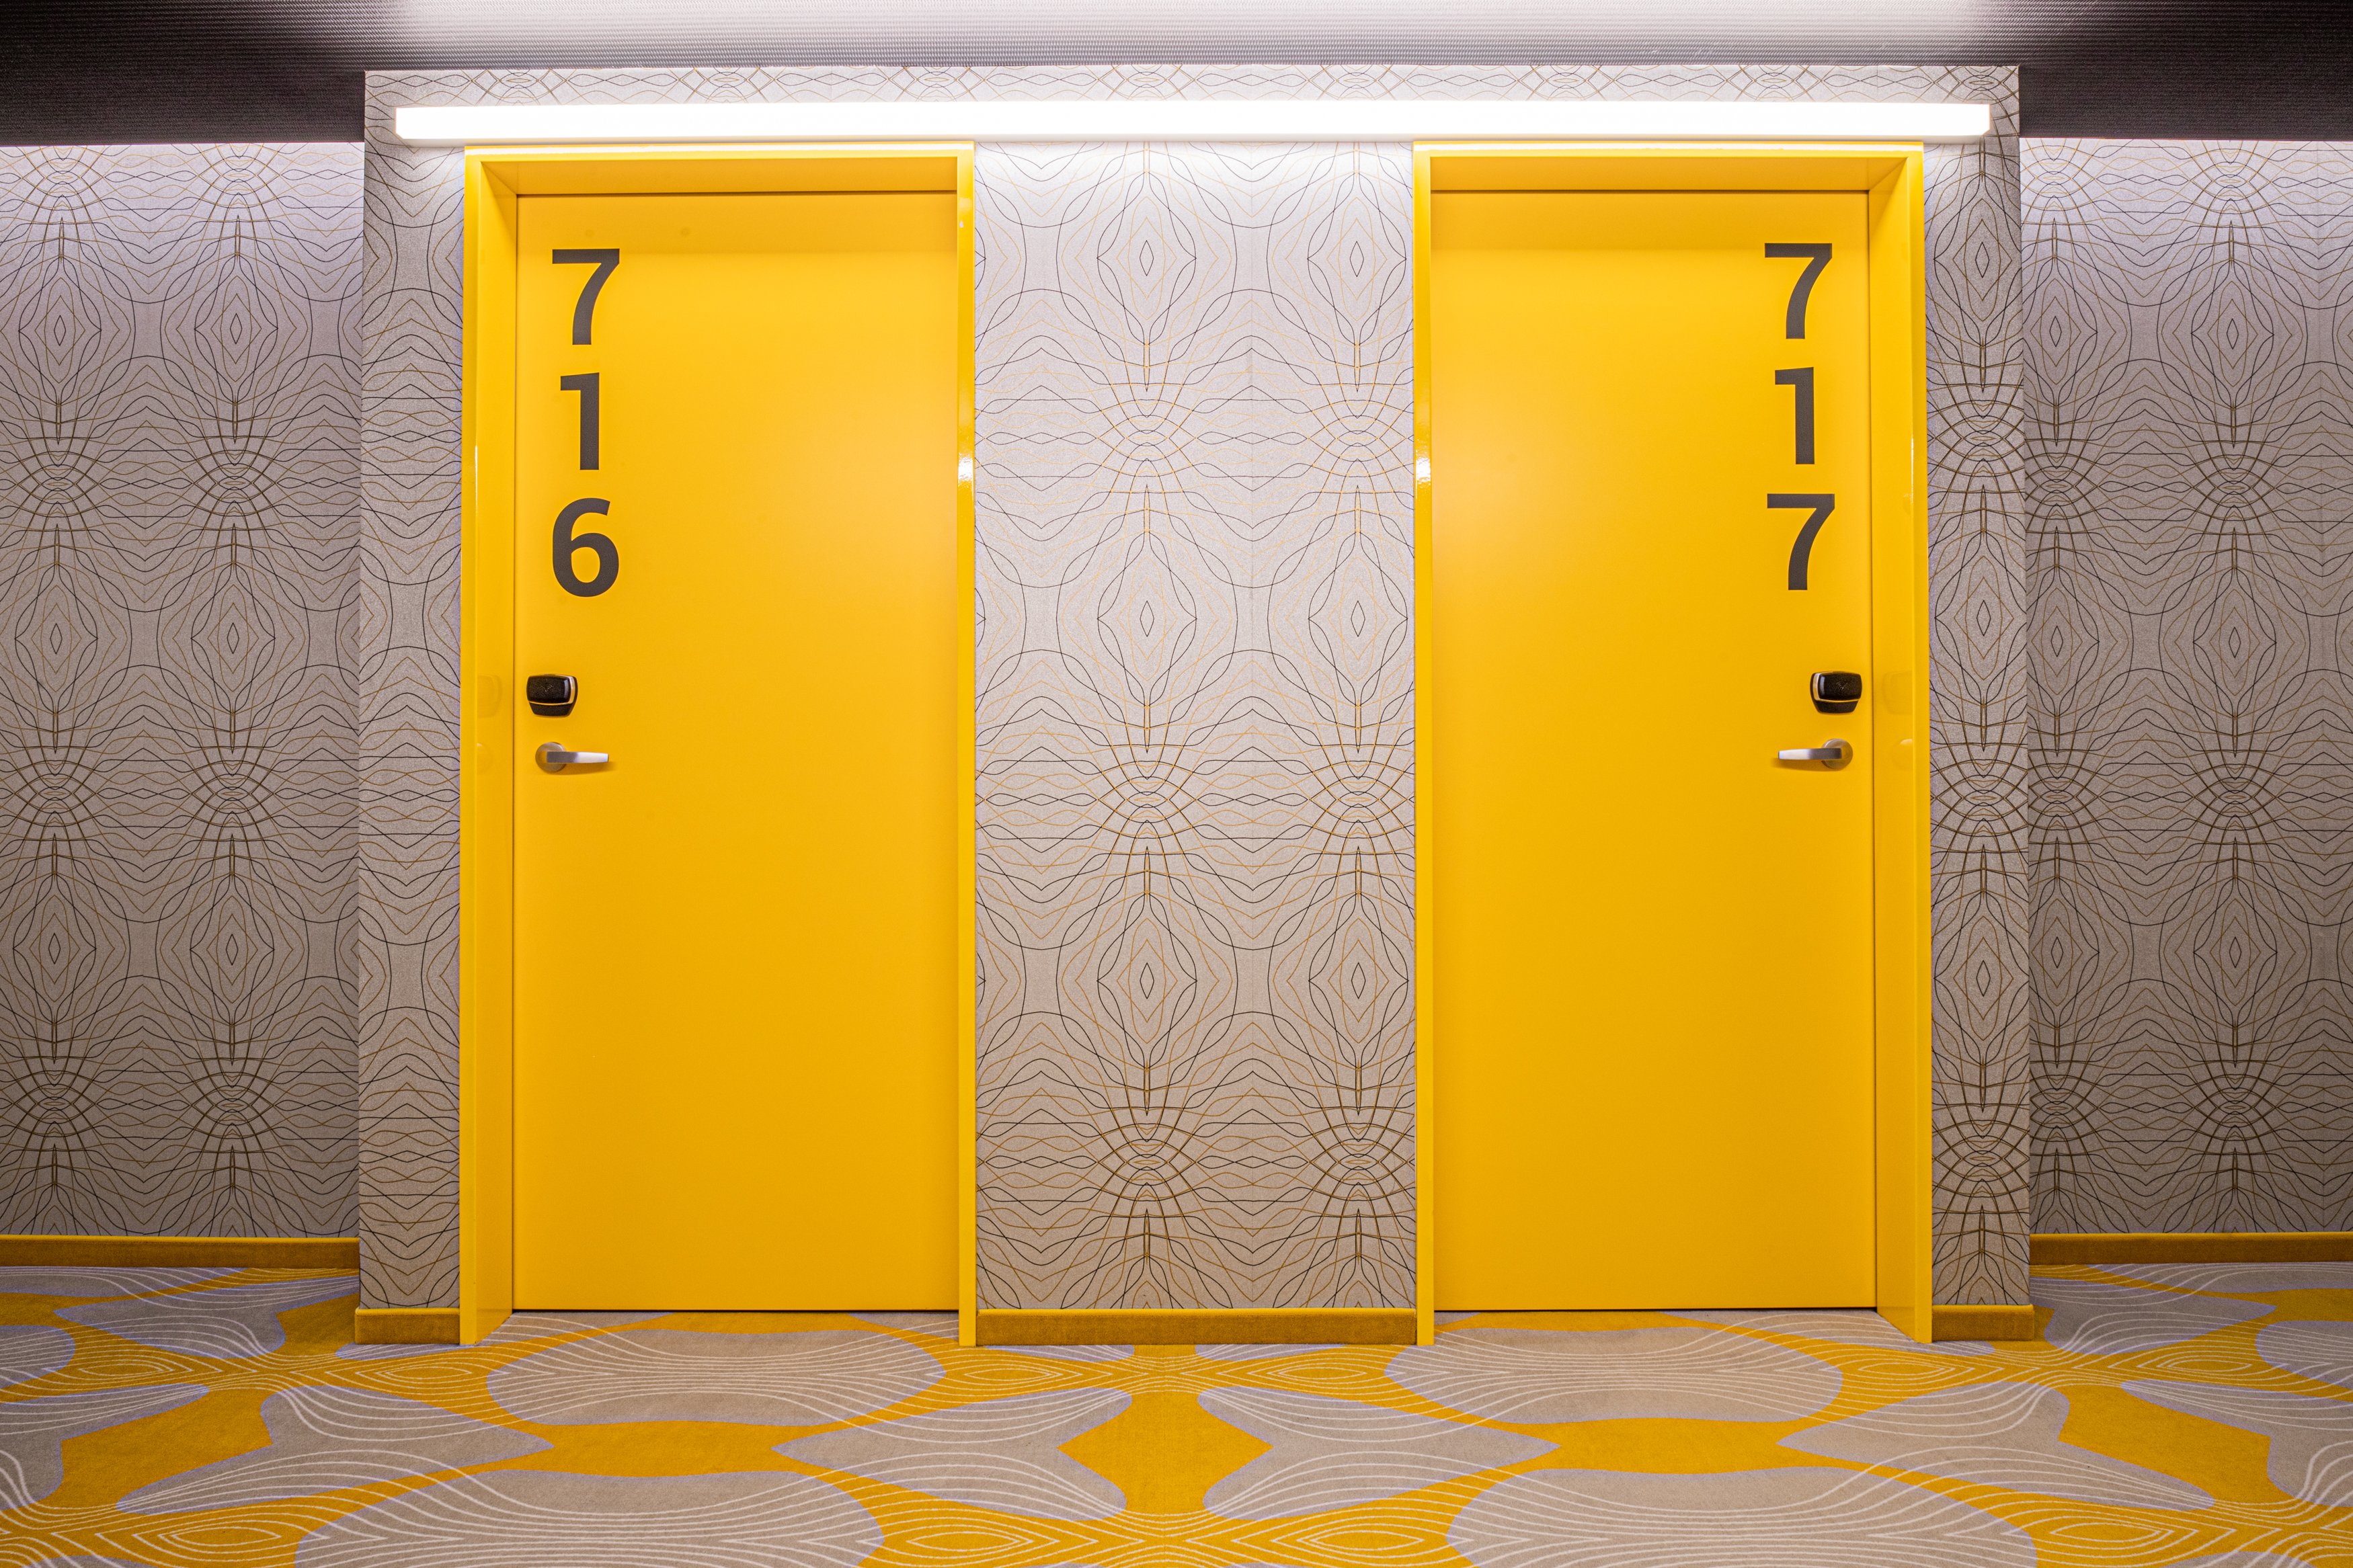 Zwei gelbe Hotelzimmertüren mit groß aufgedruckten Zimmernummern